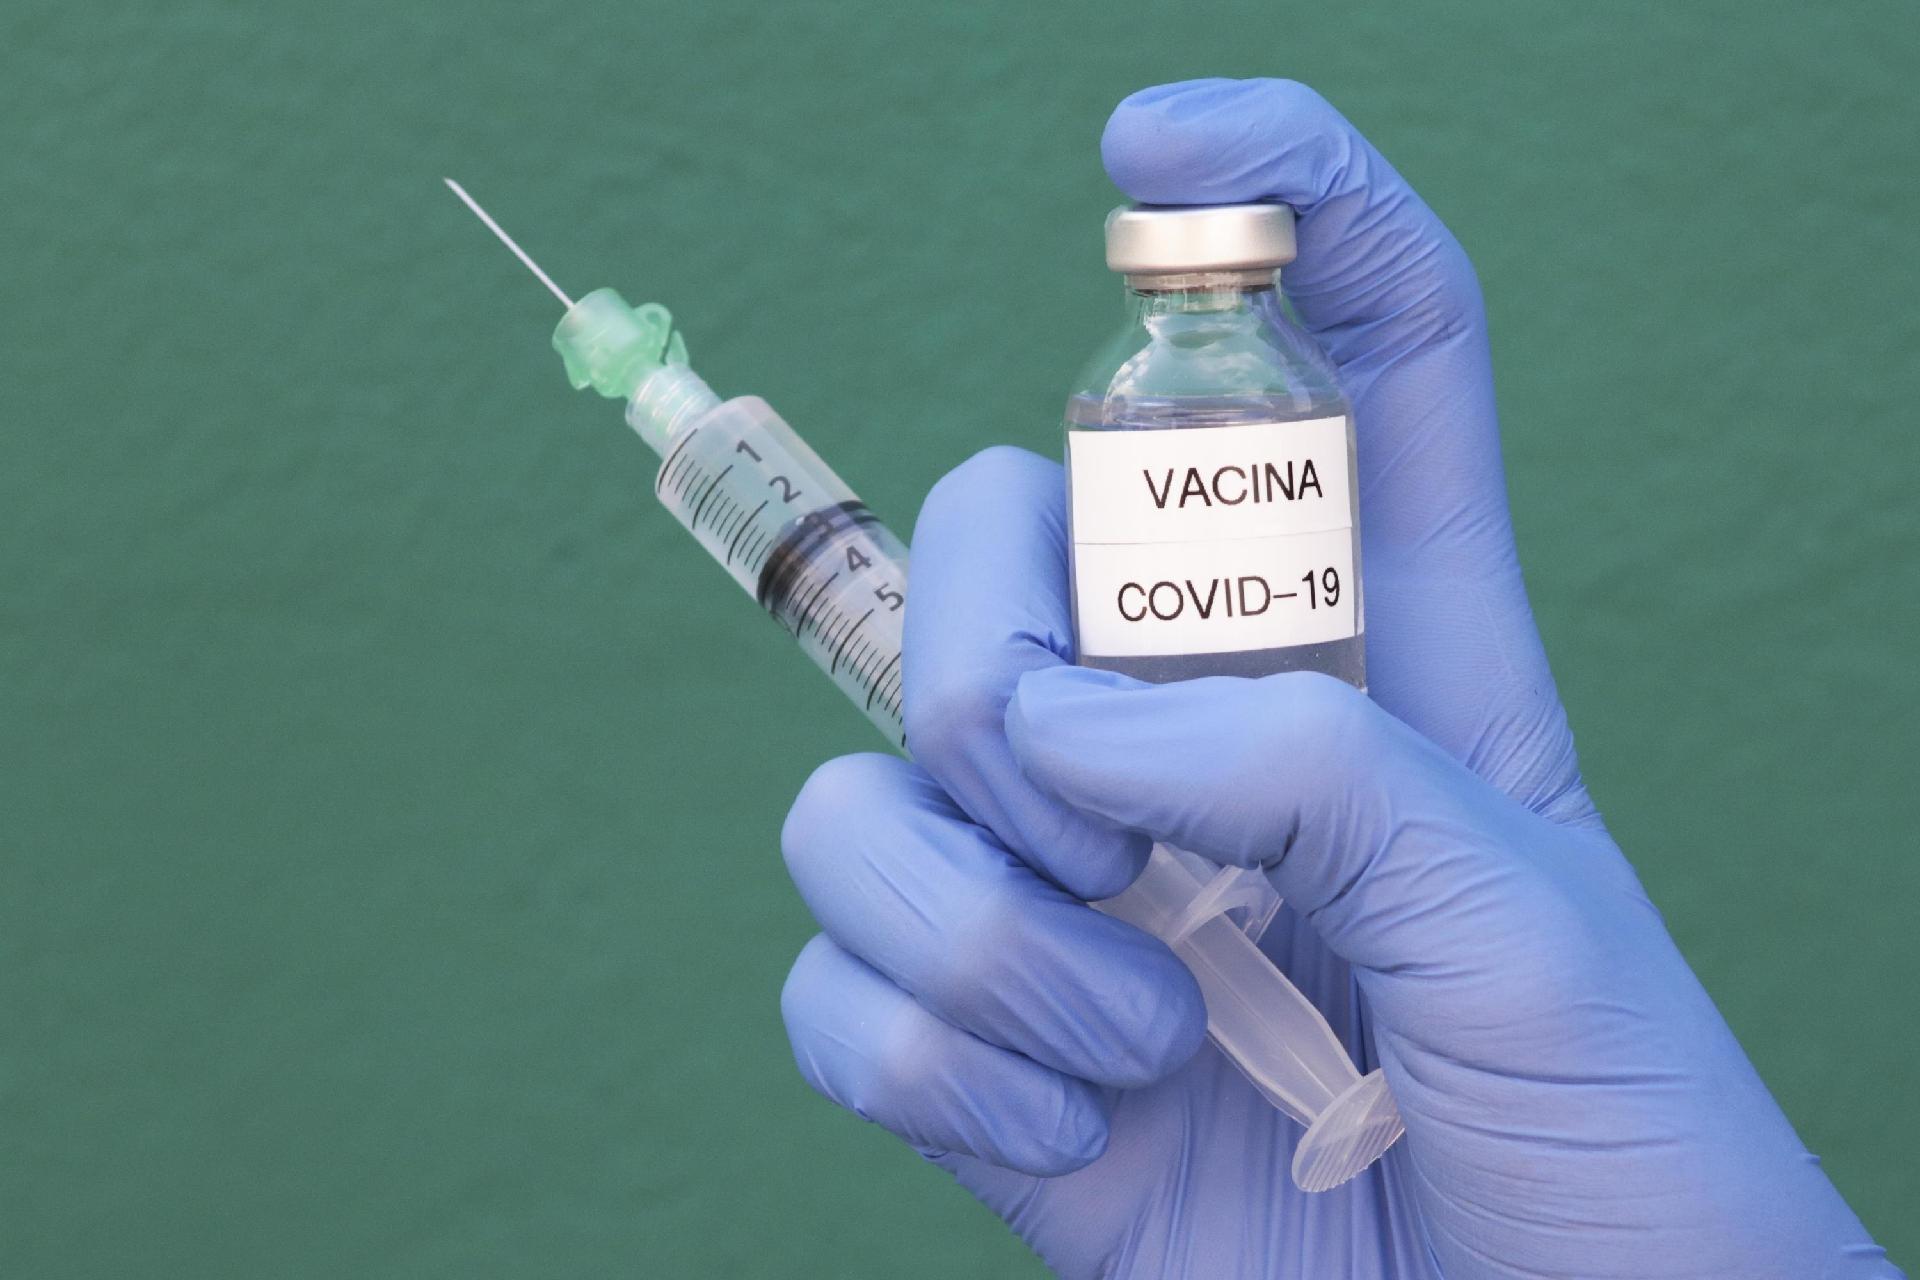 Vacinação anti-covid vai começar por médicos e idosos na Itália - 06/09/2020 - UOL VivaBem